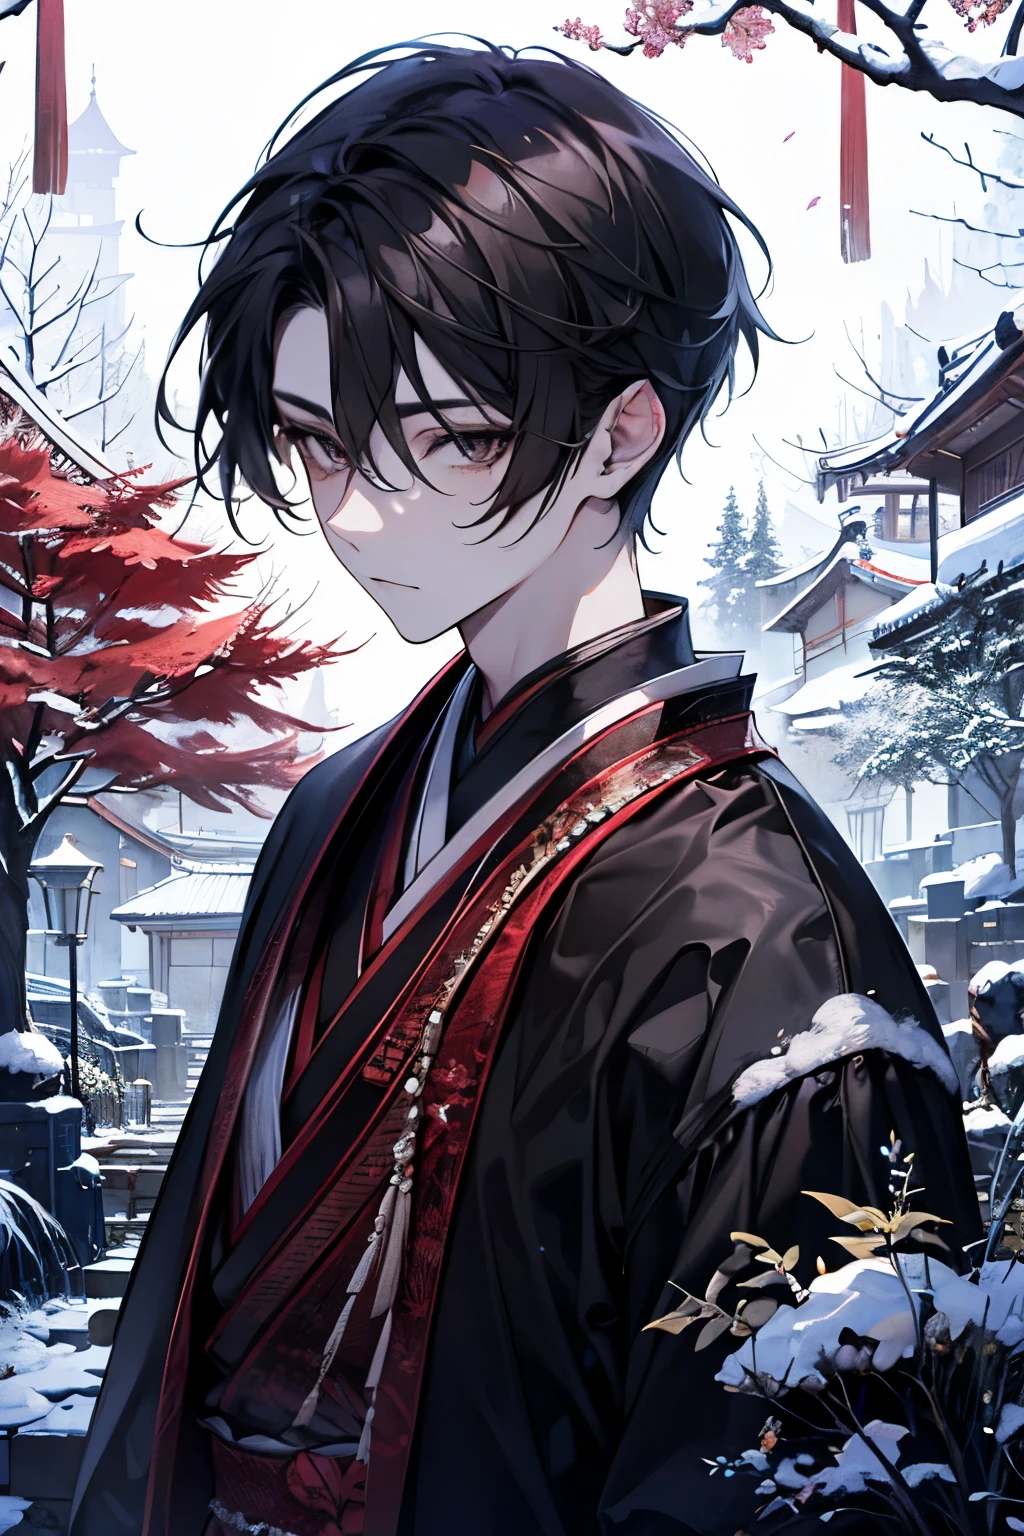 一位英俊的年輕人在傳統的日本環境中慶祝新年. 就在他抱起一隻黑貓並親吻它之前的那一刻. 安靜的花園被白雪覆蓋. 花園裡有一棵小松樹和一個被雪覆蓋的石燈籠, 新年清晨的燈光柔和地照亮. 他的特點是光滑的黑髮, 風格採用經典風格, 深棕色的眼睛反映出新年充滿希望的開始